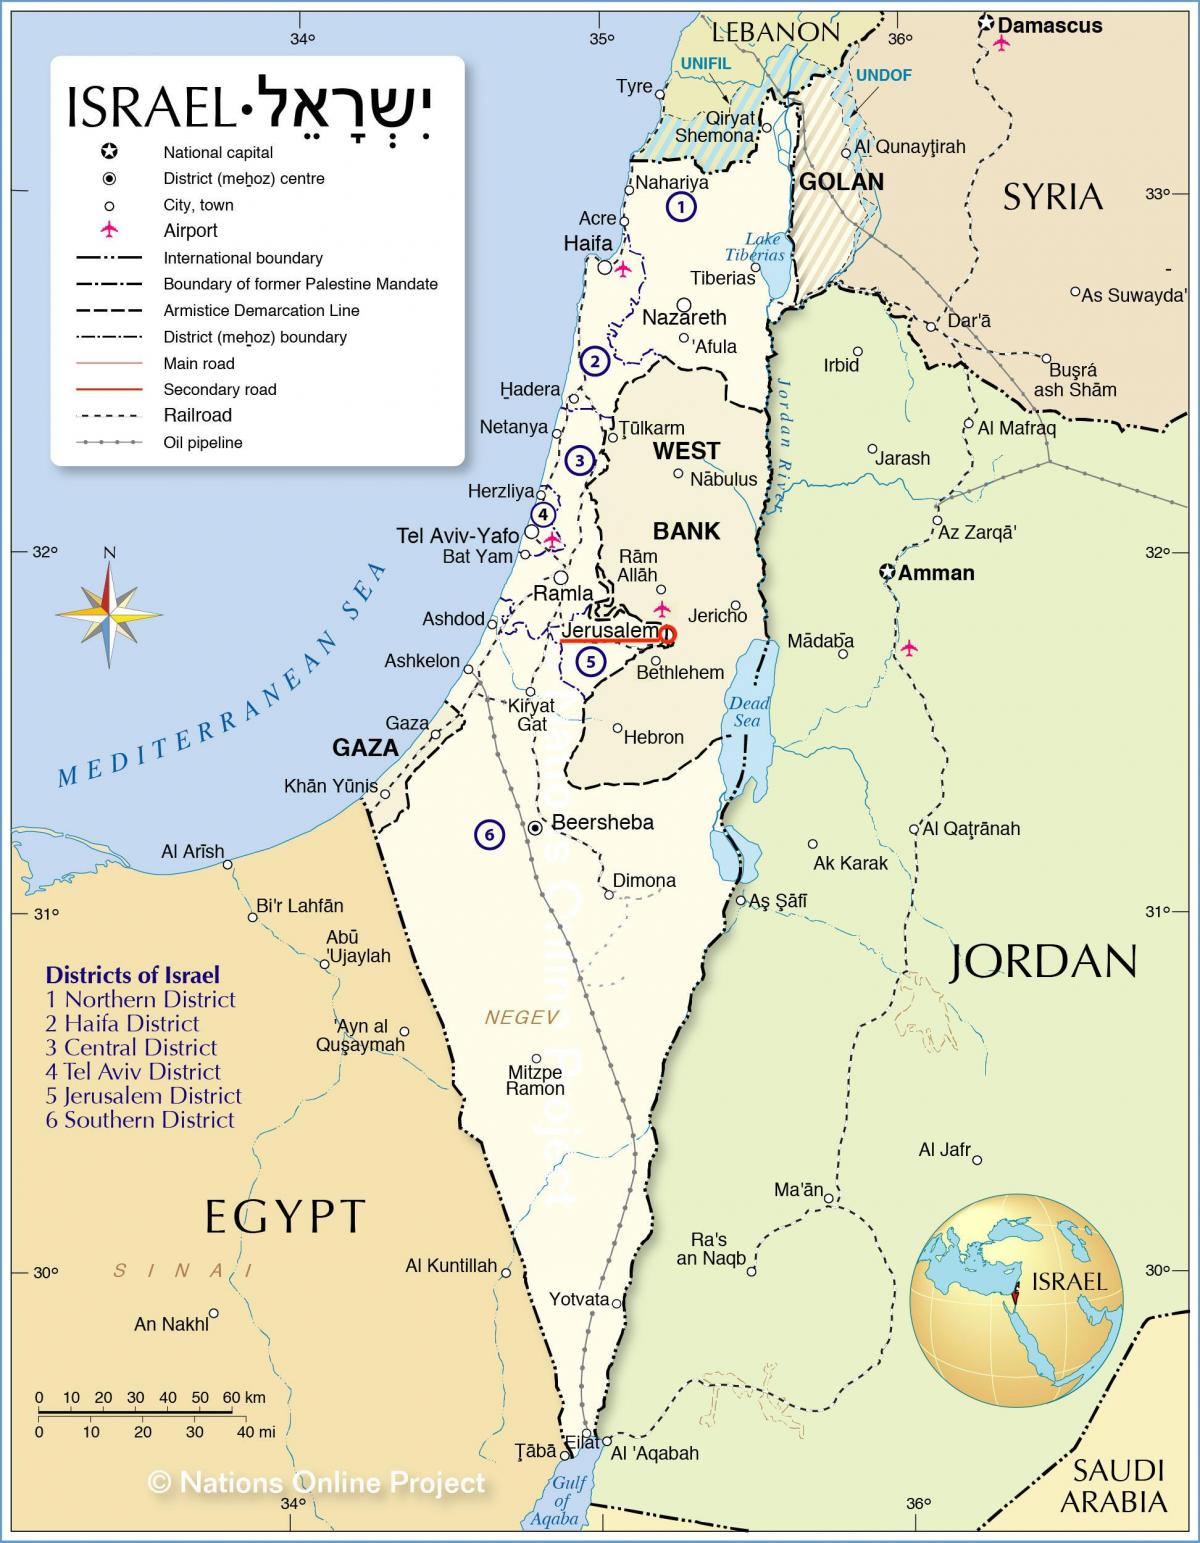 耶路撒冷在以色列地图上